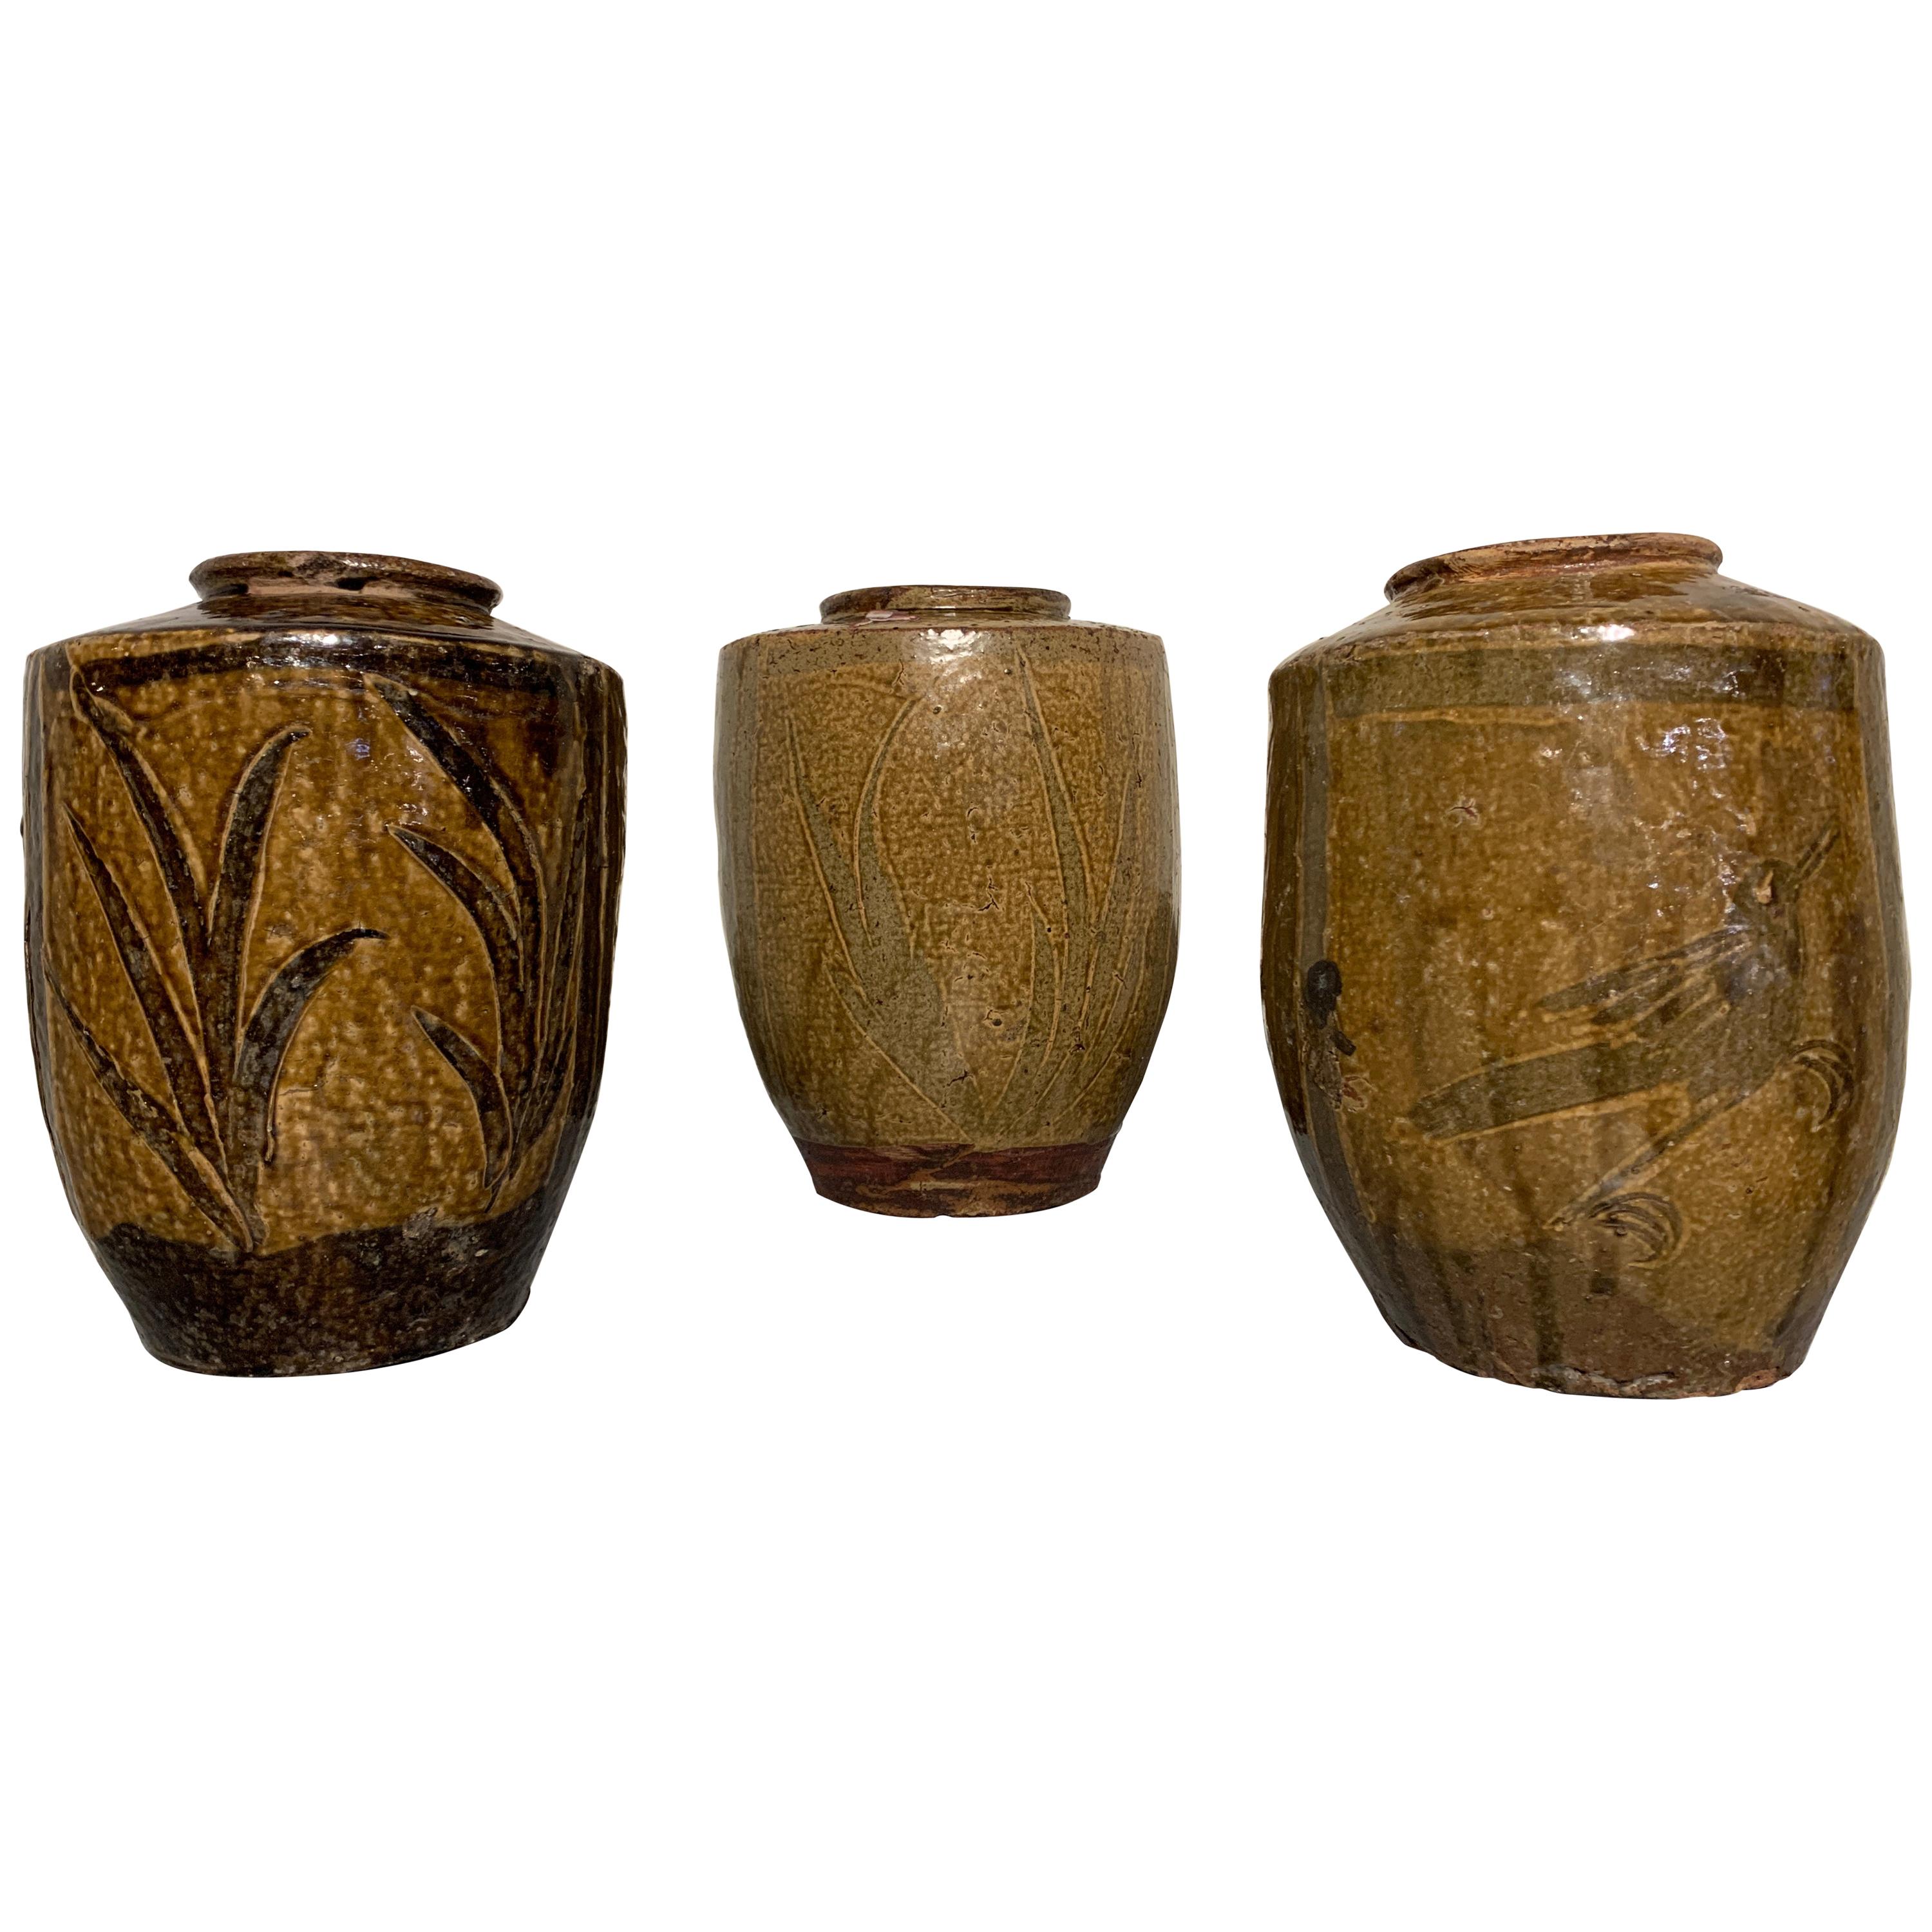 Trois jarres de stockage chinoises à glaçure olive et brune, fin du 19e siècle